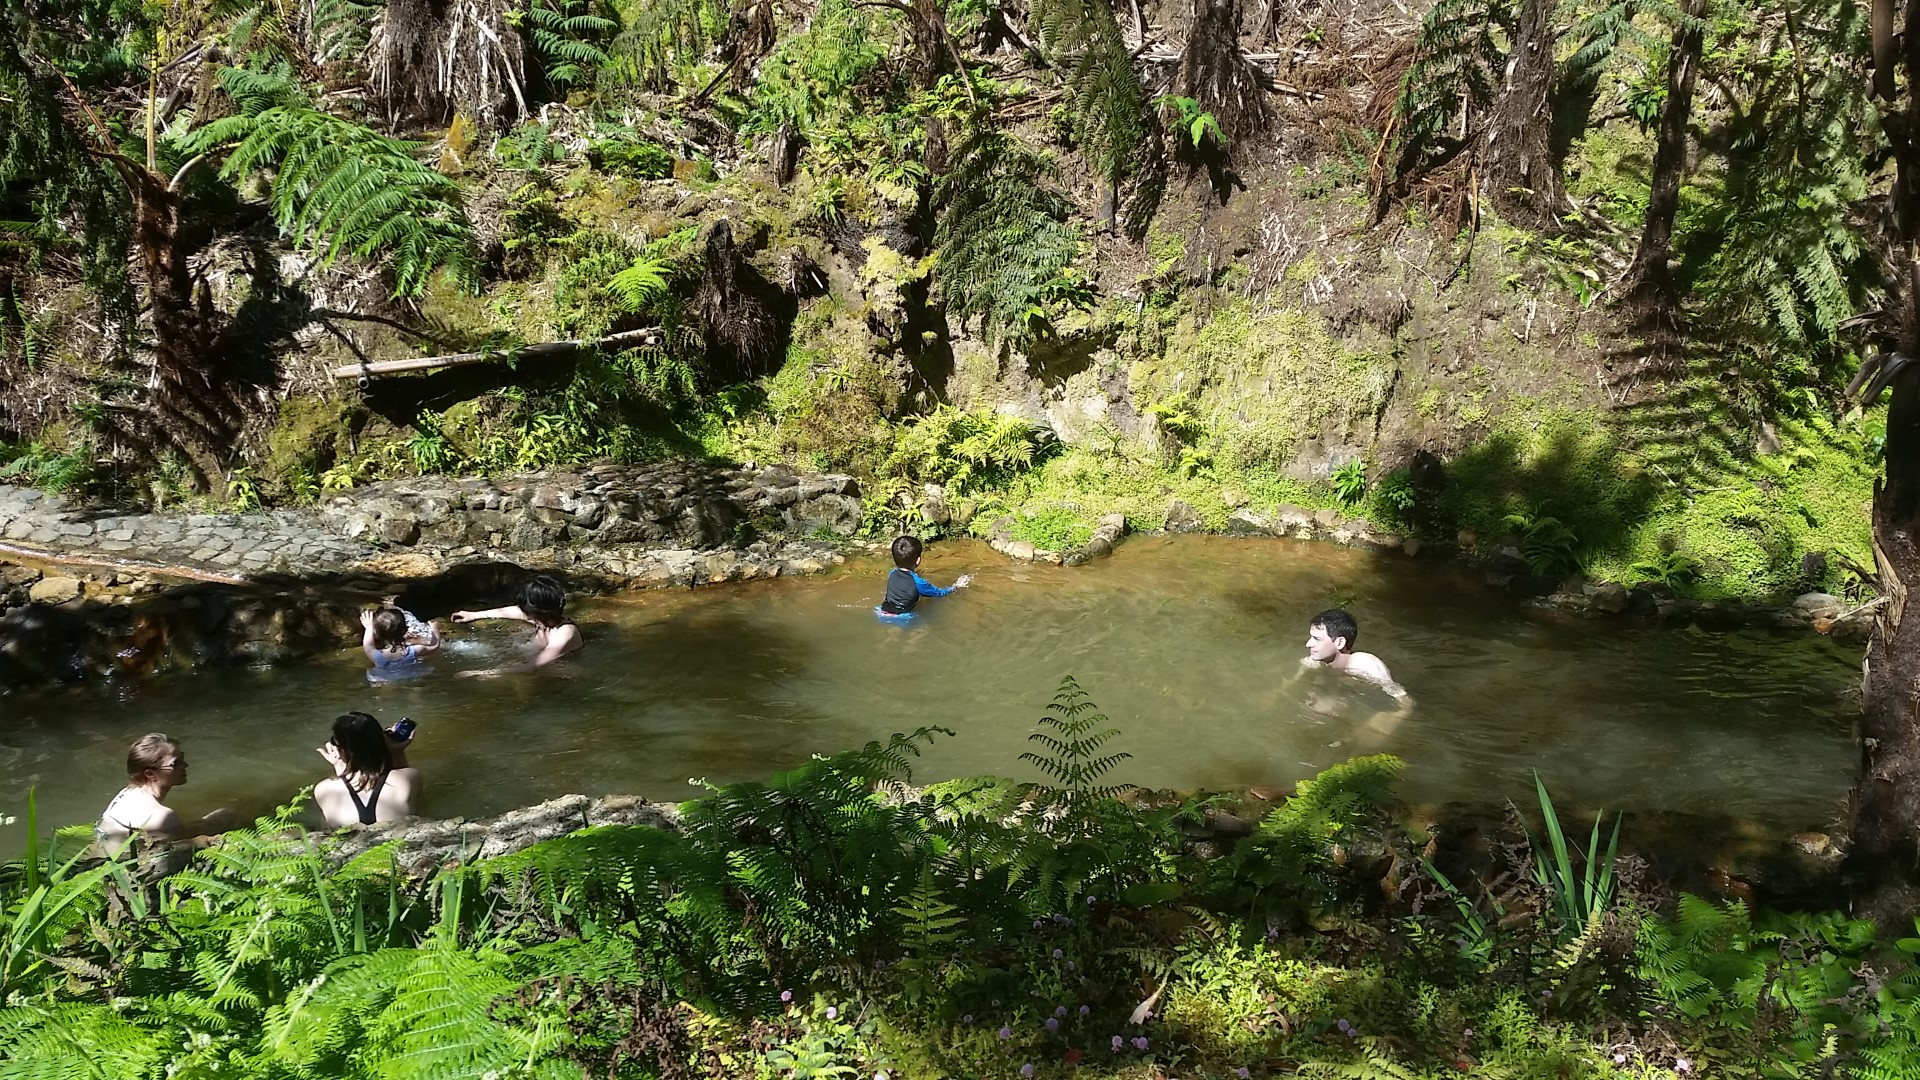 Termal pools in Caldeira Velha